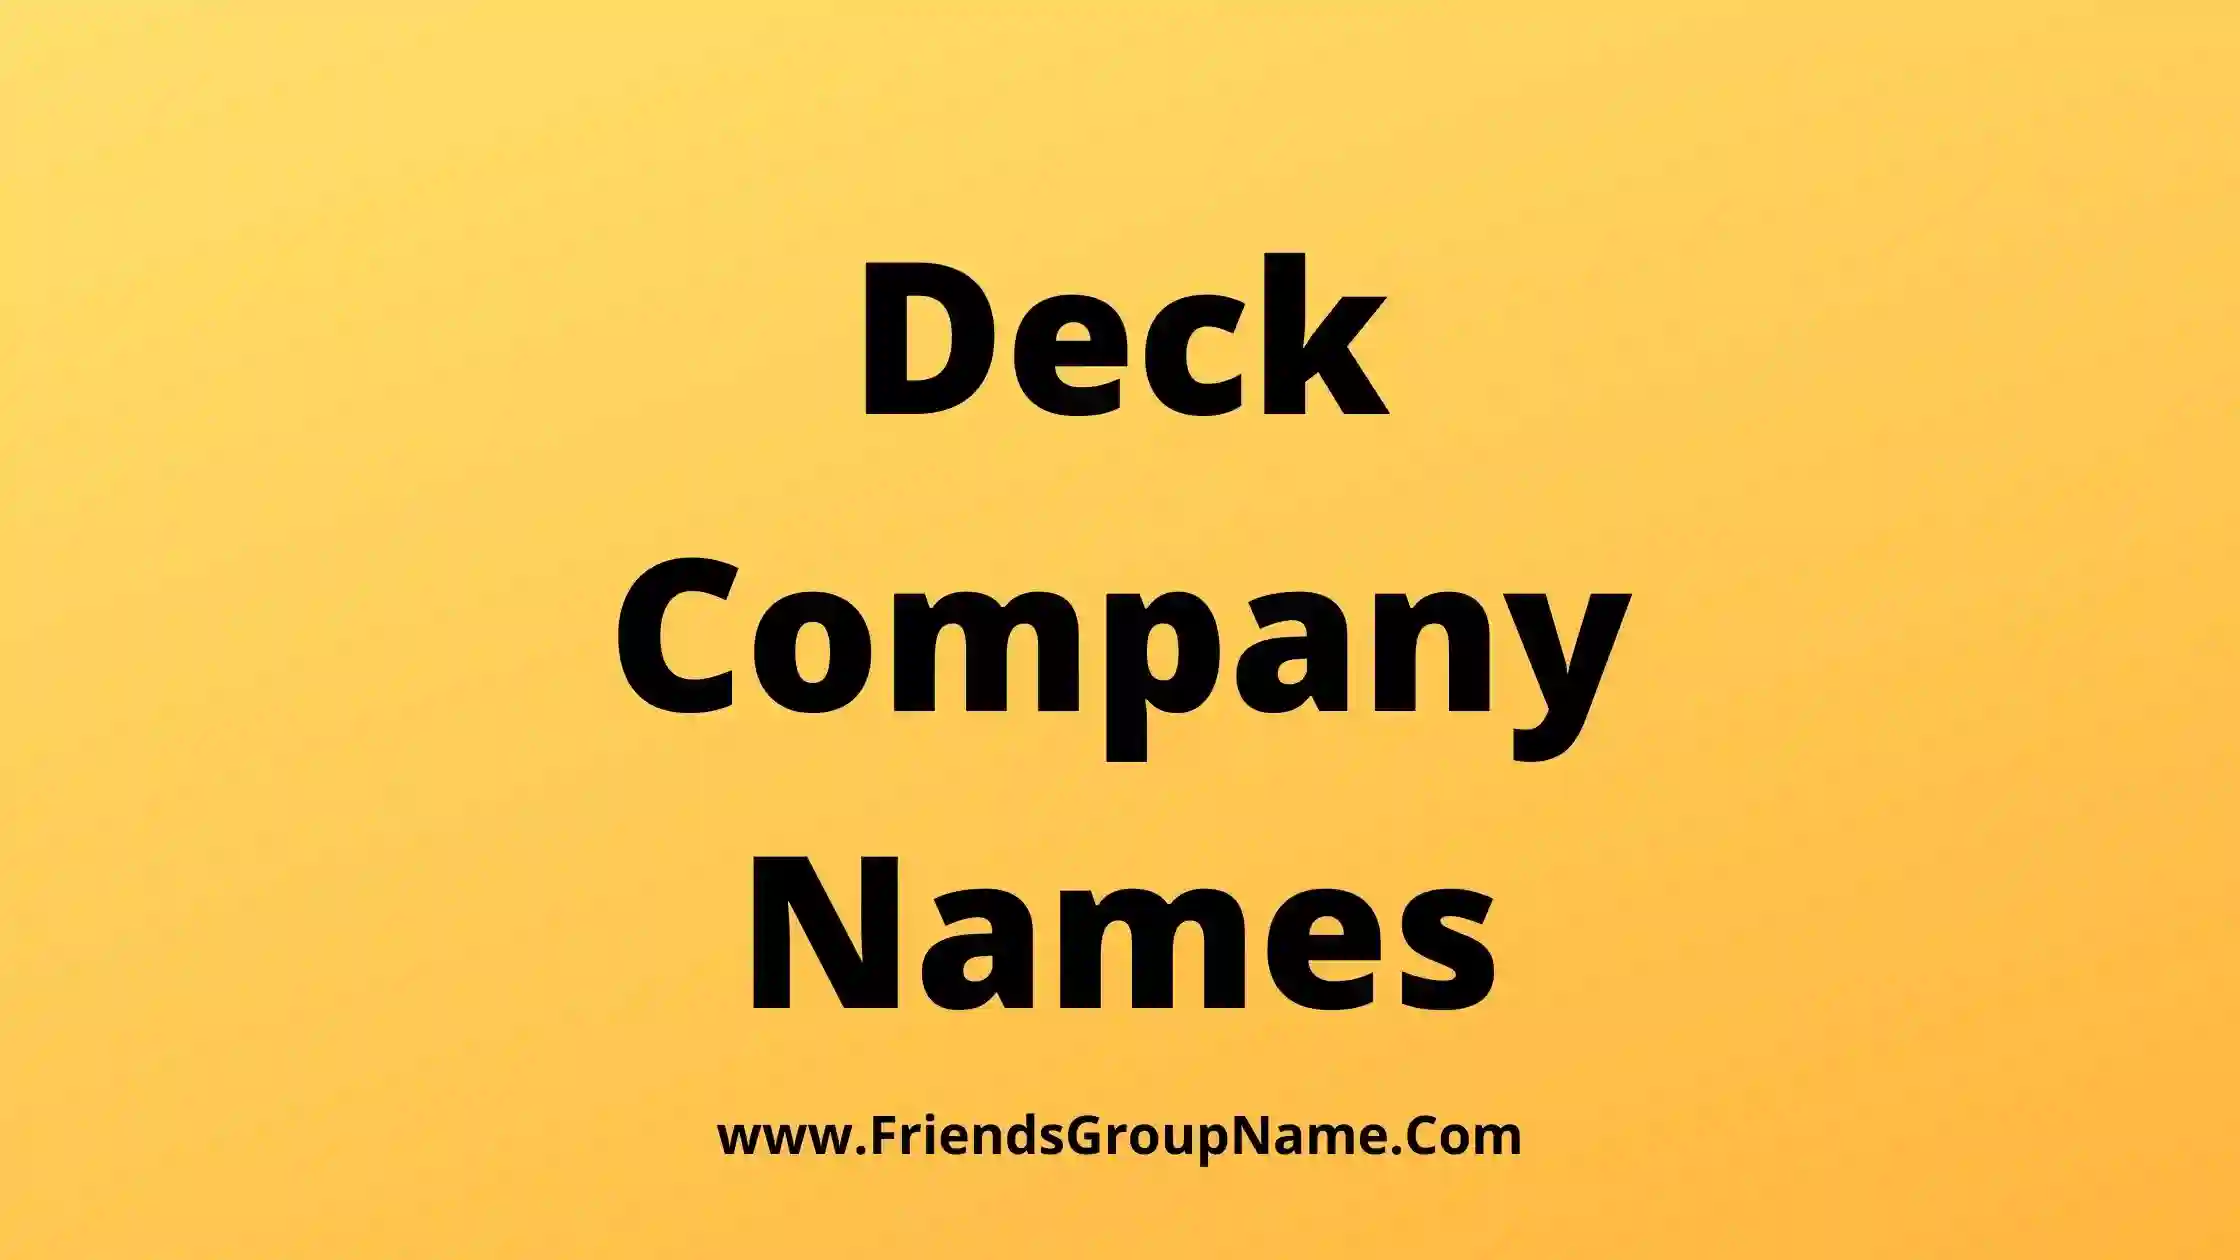 Deck Company Names